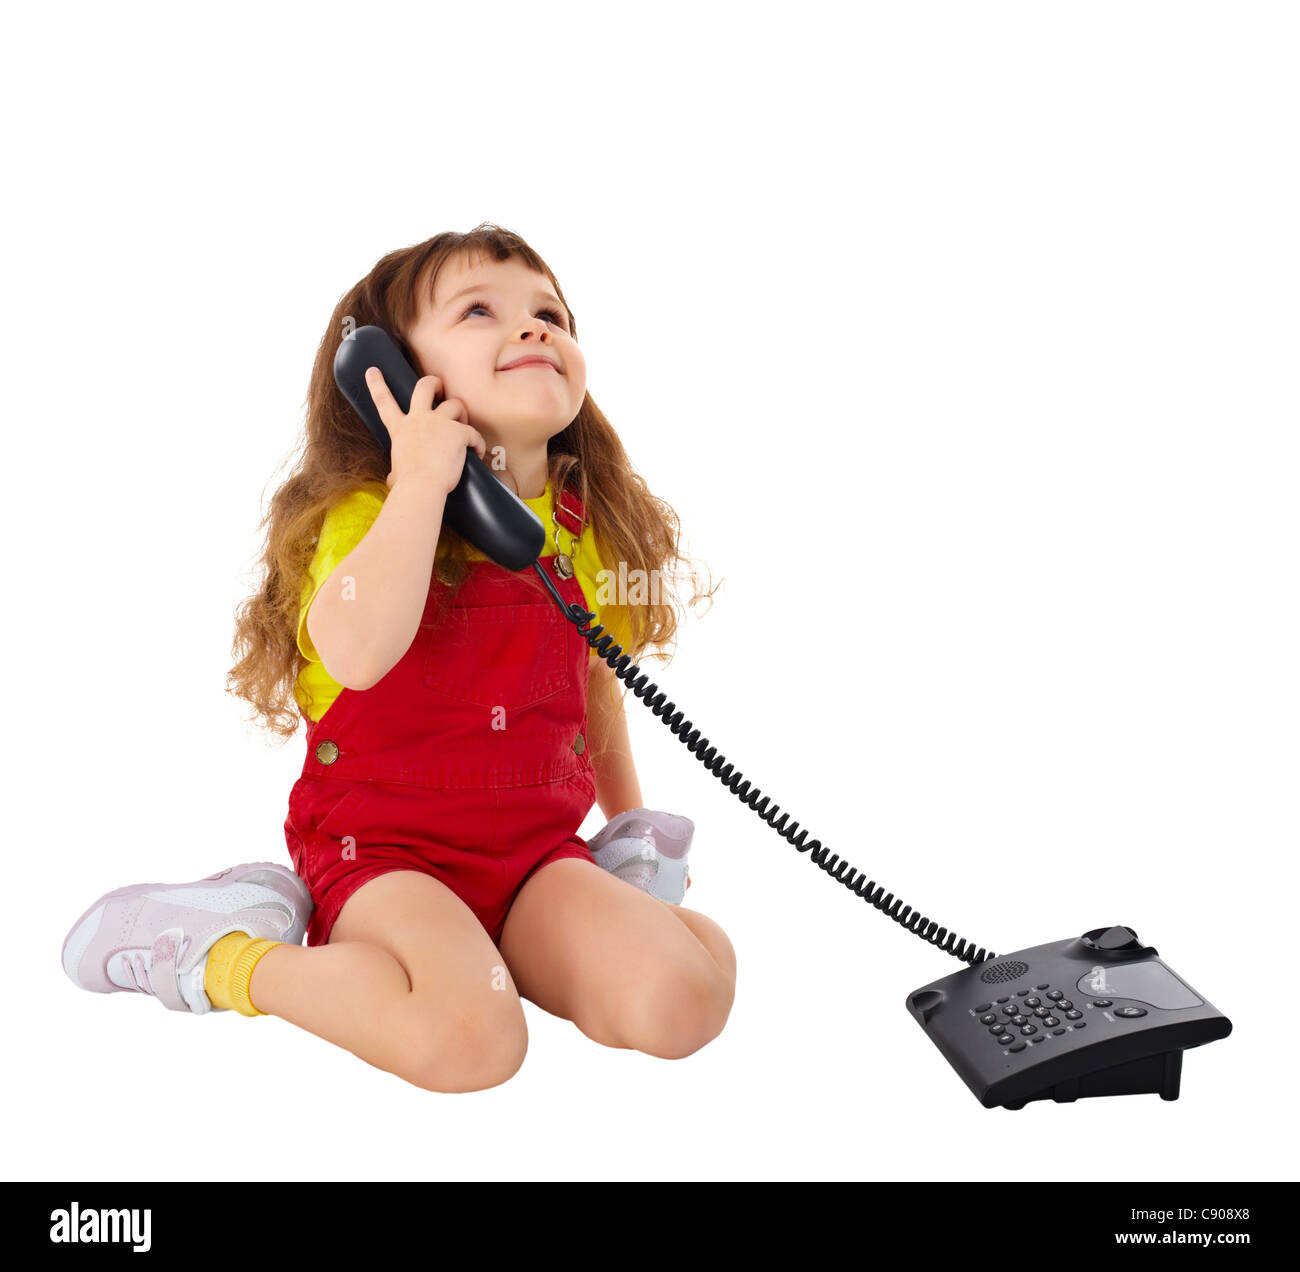 Включи звонок на 5. Ребенок с телефонной трубкой. Девочка разговаривает по телефону. Девочка с телефоном. Маленькая девочка с телефоном.